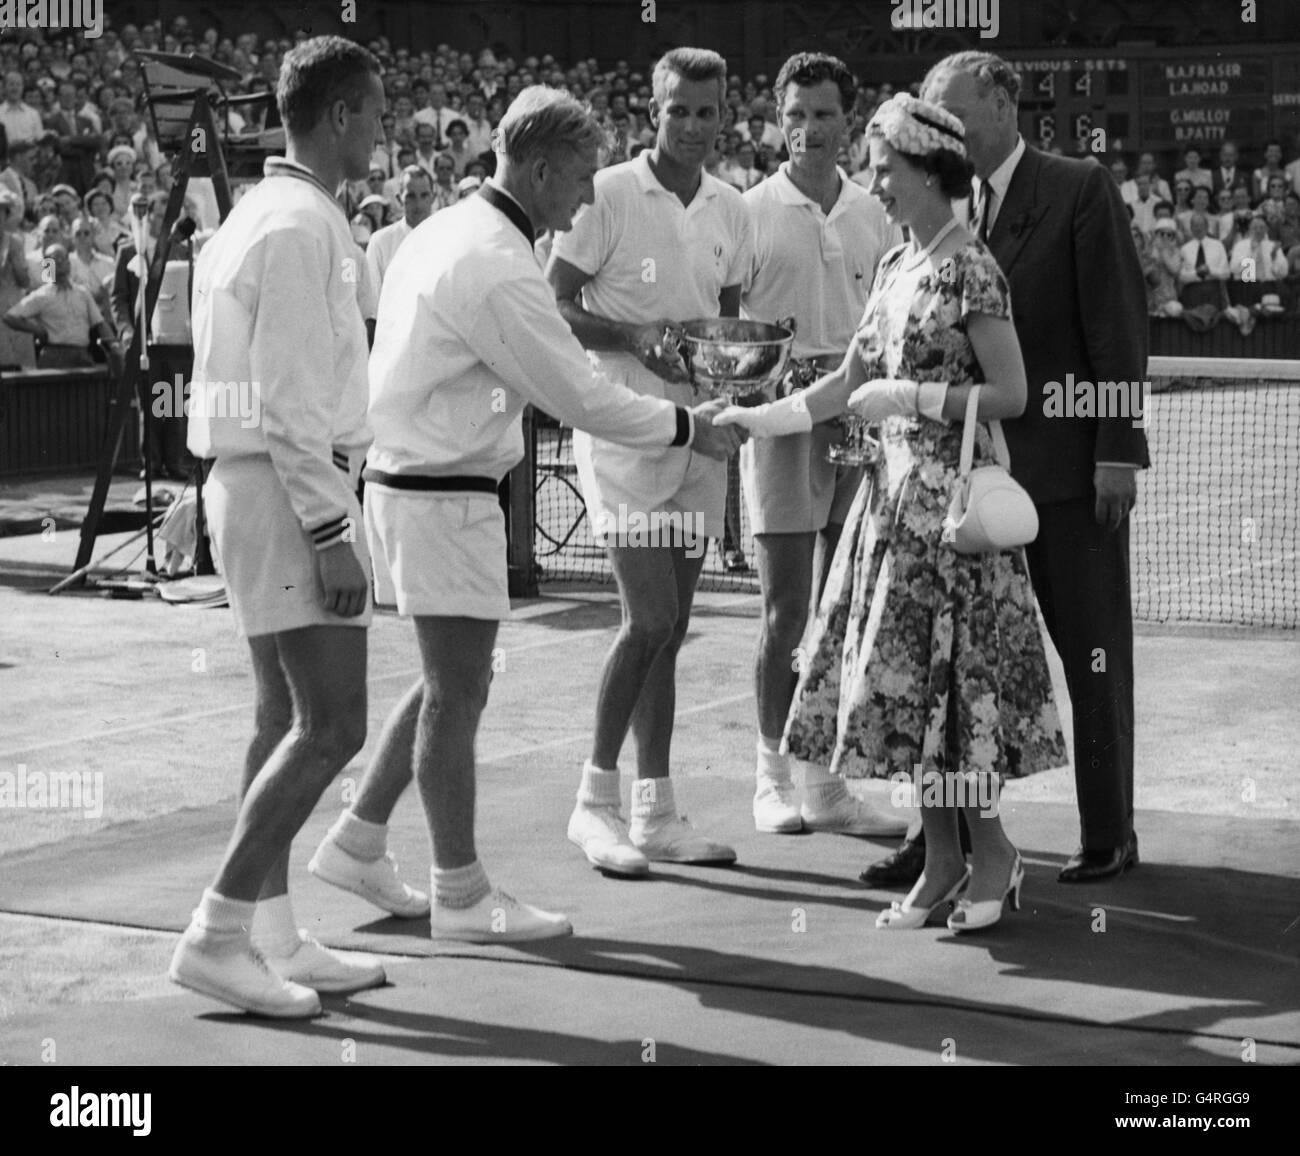 Nach dem Finale des Herrendoppel in Wimbledon überreicht die Queen den Gewinnern Gardner Mulloy und Budge Patty ihre Trophäe. Sie gratulierte dem australischen Lew Hoad, der im Doppel auf der Verliererseite war, zu seinem Sieg in den Herreneinzeln. Stockfoto